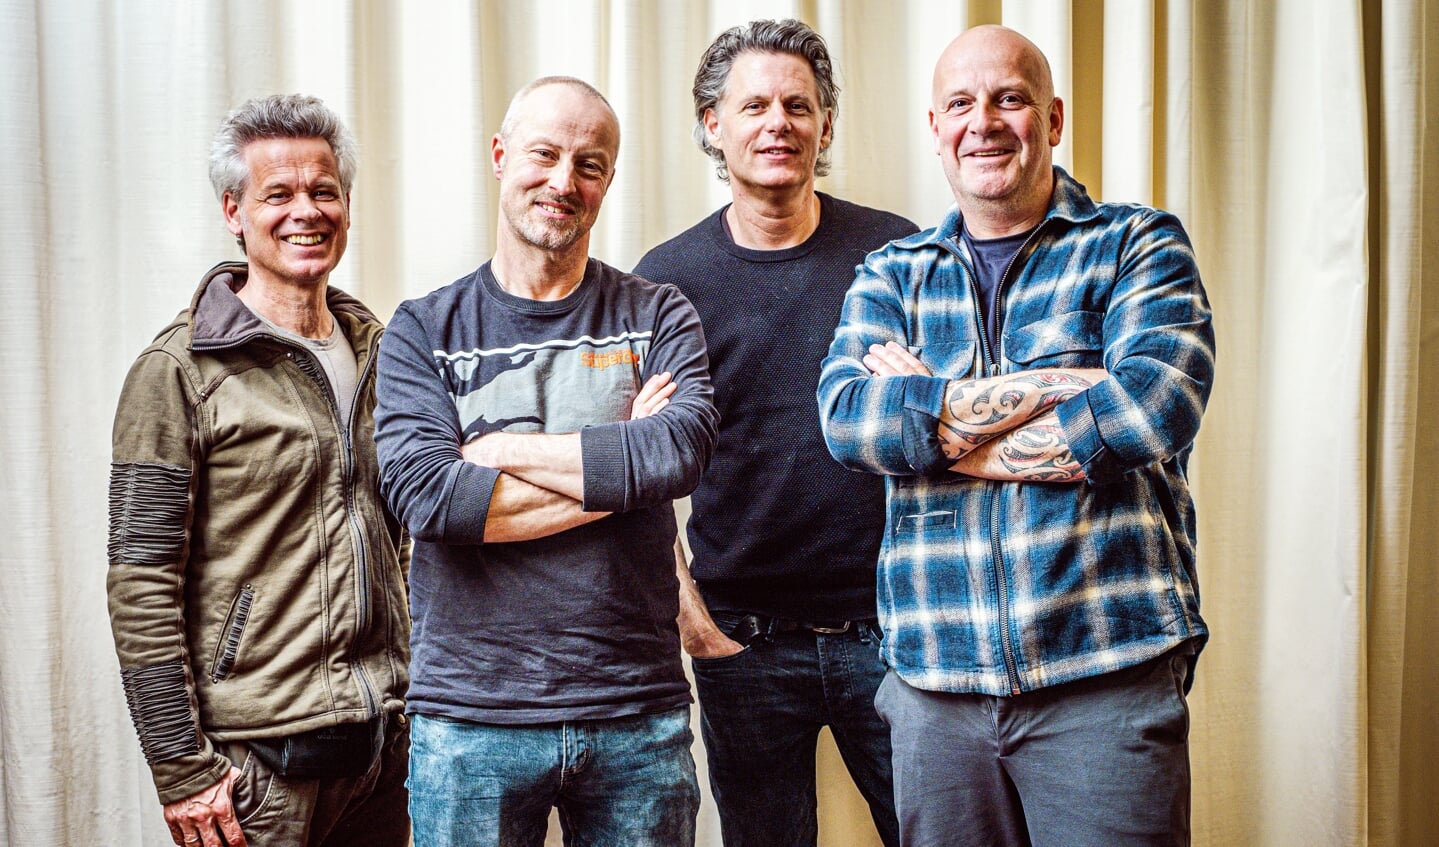 De bandleden van Blöf zijn Paskal Jakobsen (zanger/gitaar, rechts), Bas Kennis (toetsen/gitaar, tweede van rechts), Peter Slager (bas, tweede van links) en Norman Bonink (drums, sinds 2001, links).